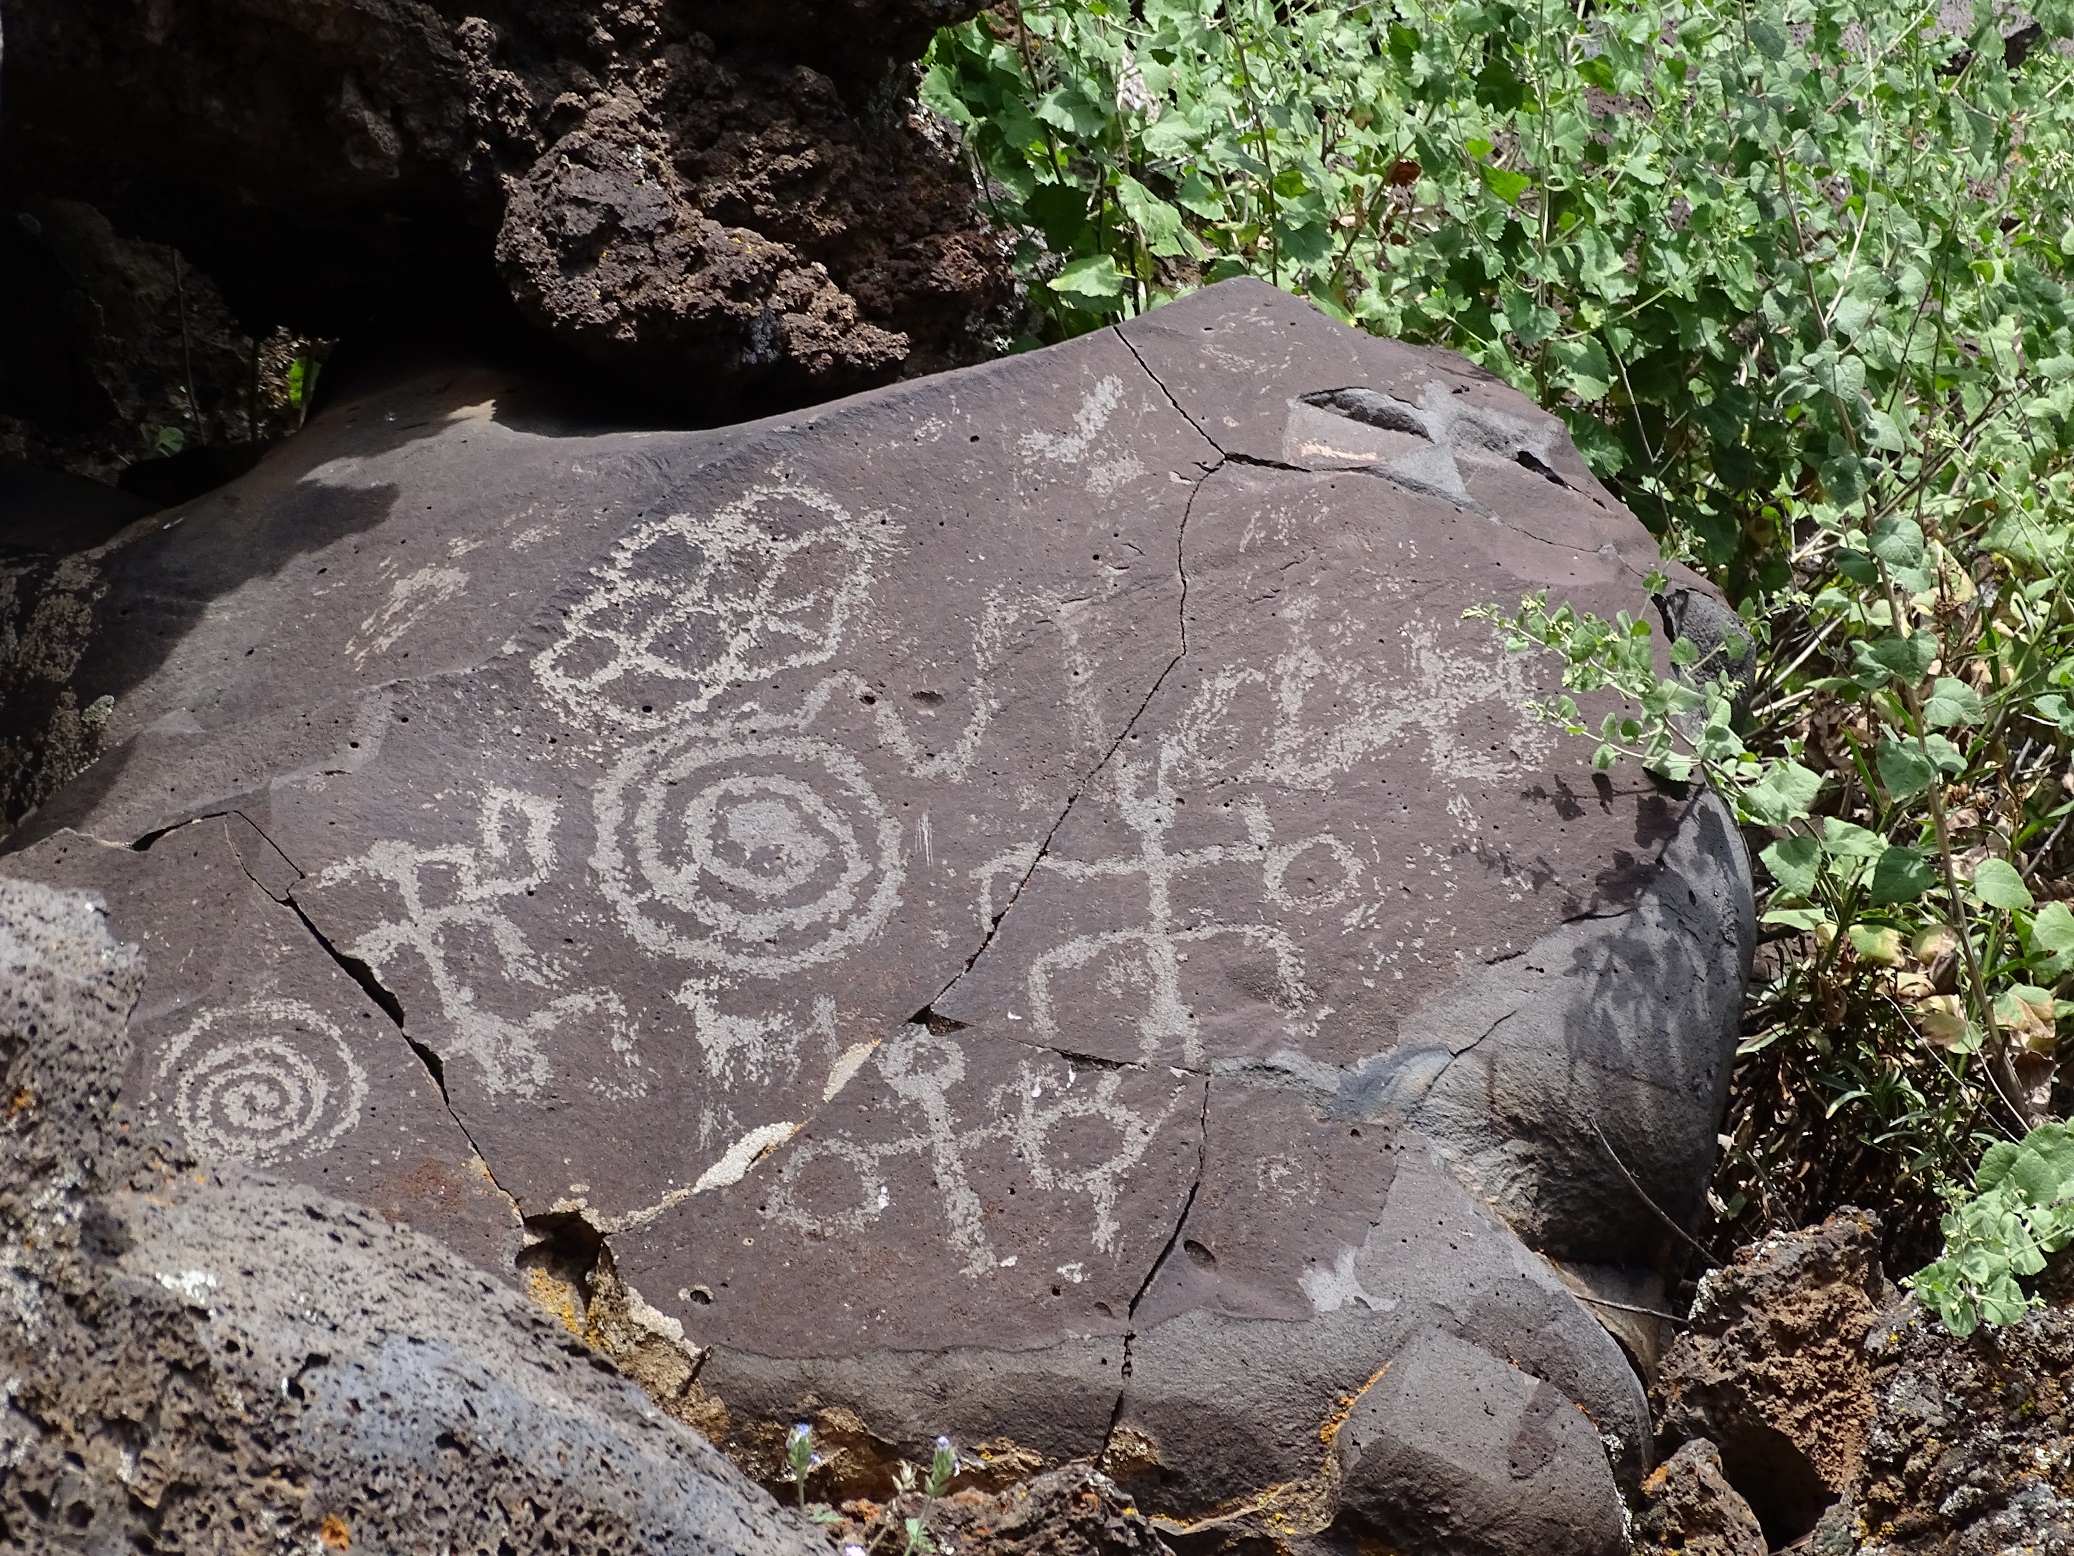 Some petroglyphs at Nampaweap on the Arizona Strip